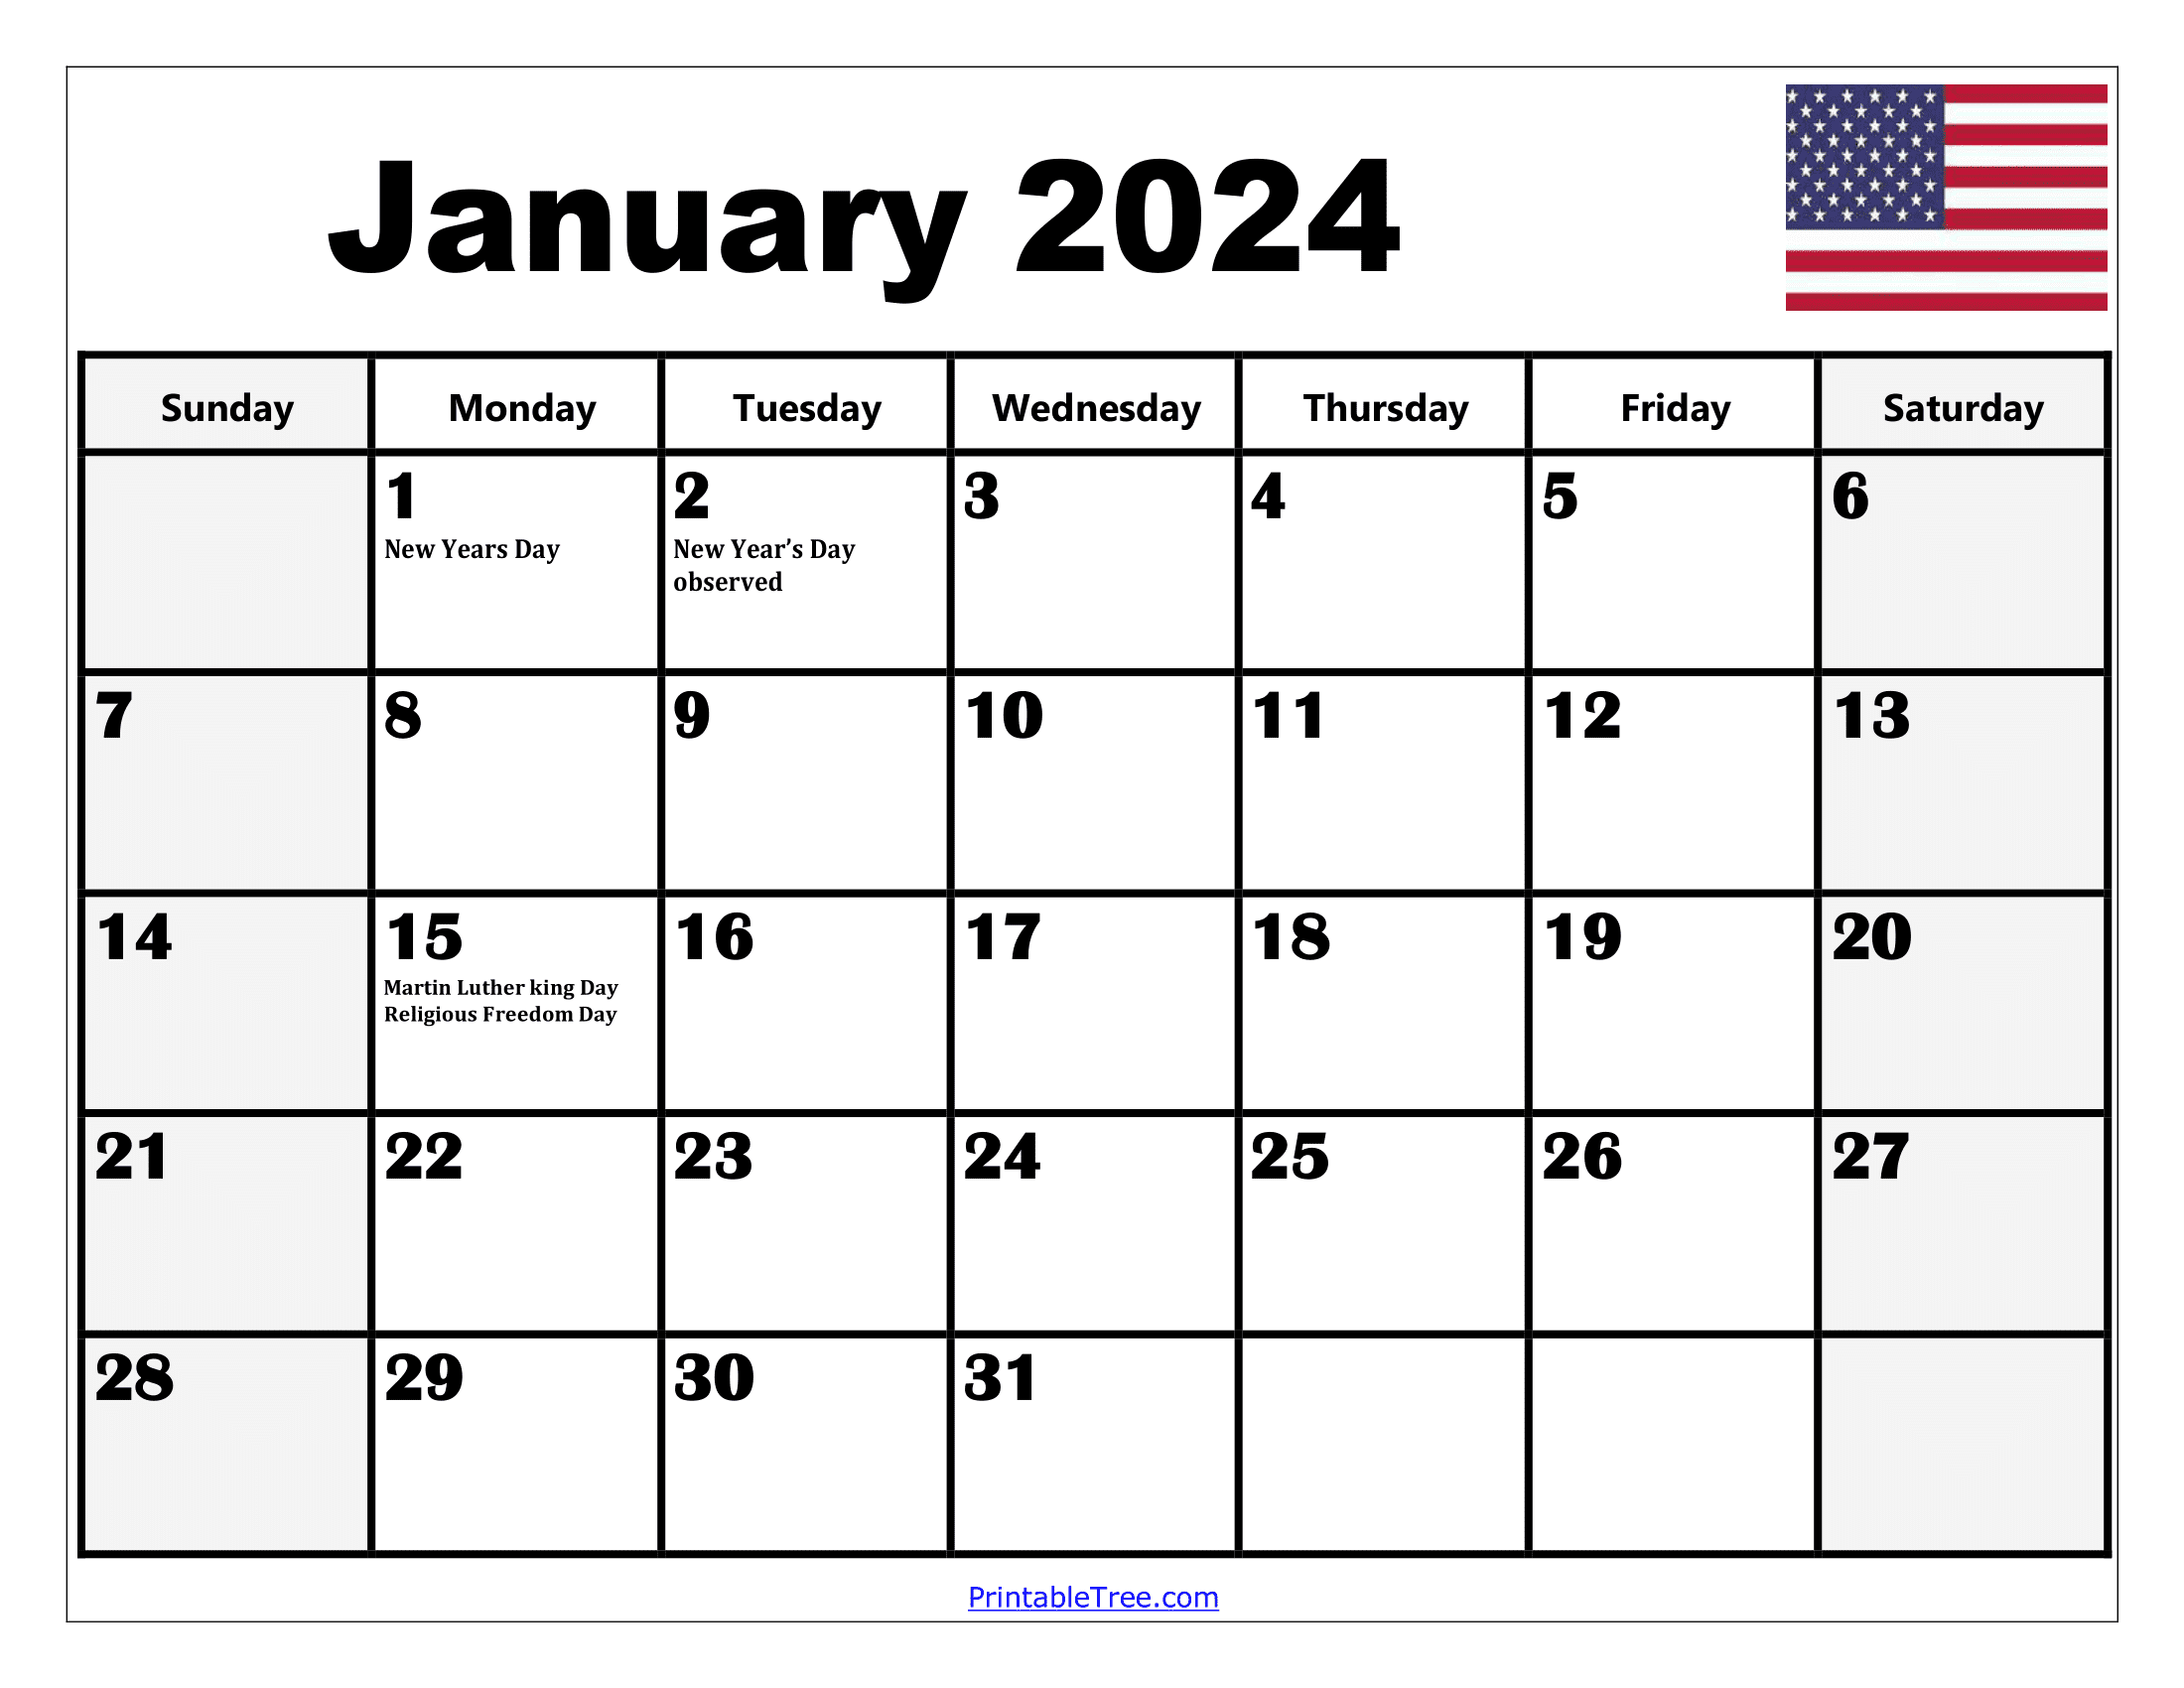 2024 Holiday Calendar Days Free Download Nov 2024 Calendar - Free Printable 2024 Calendar With Holidays